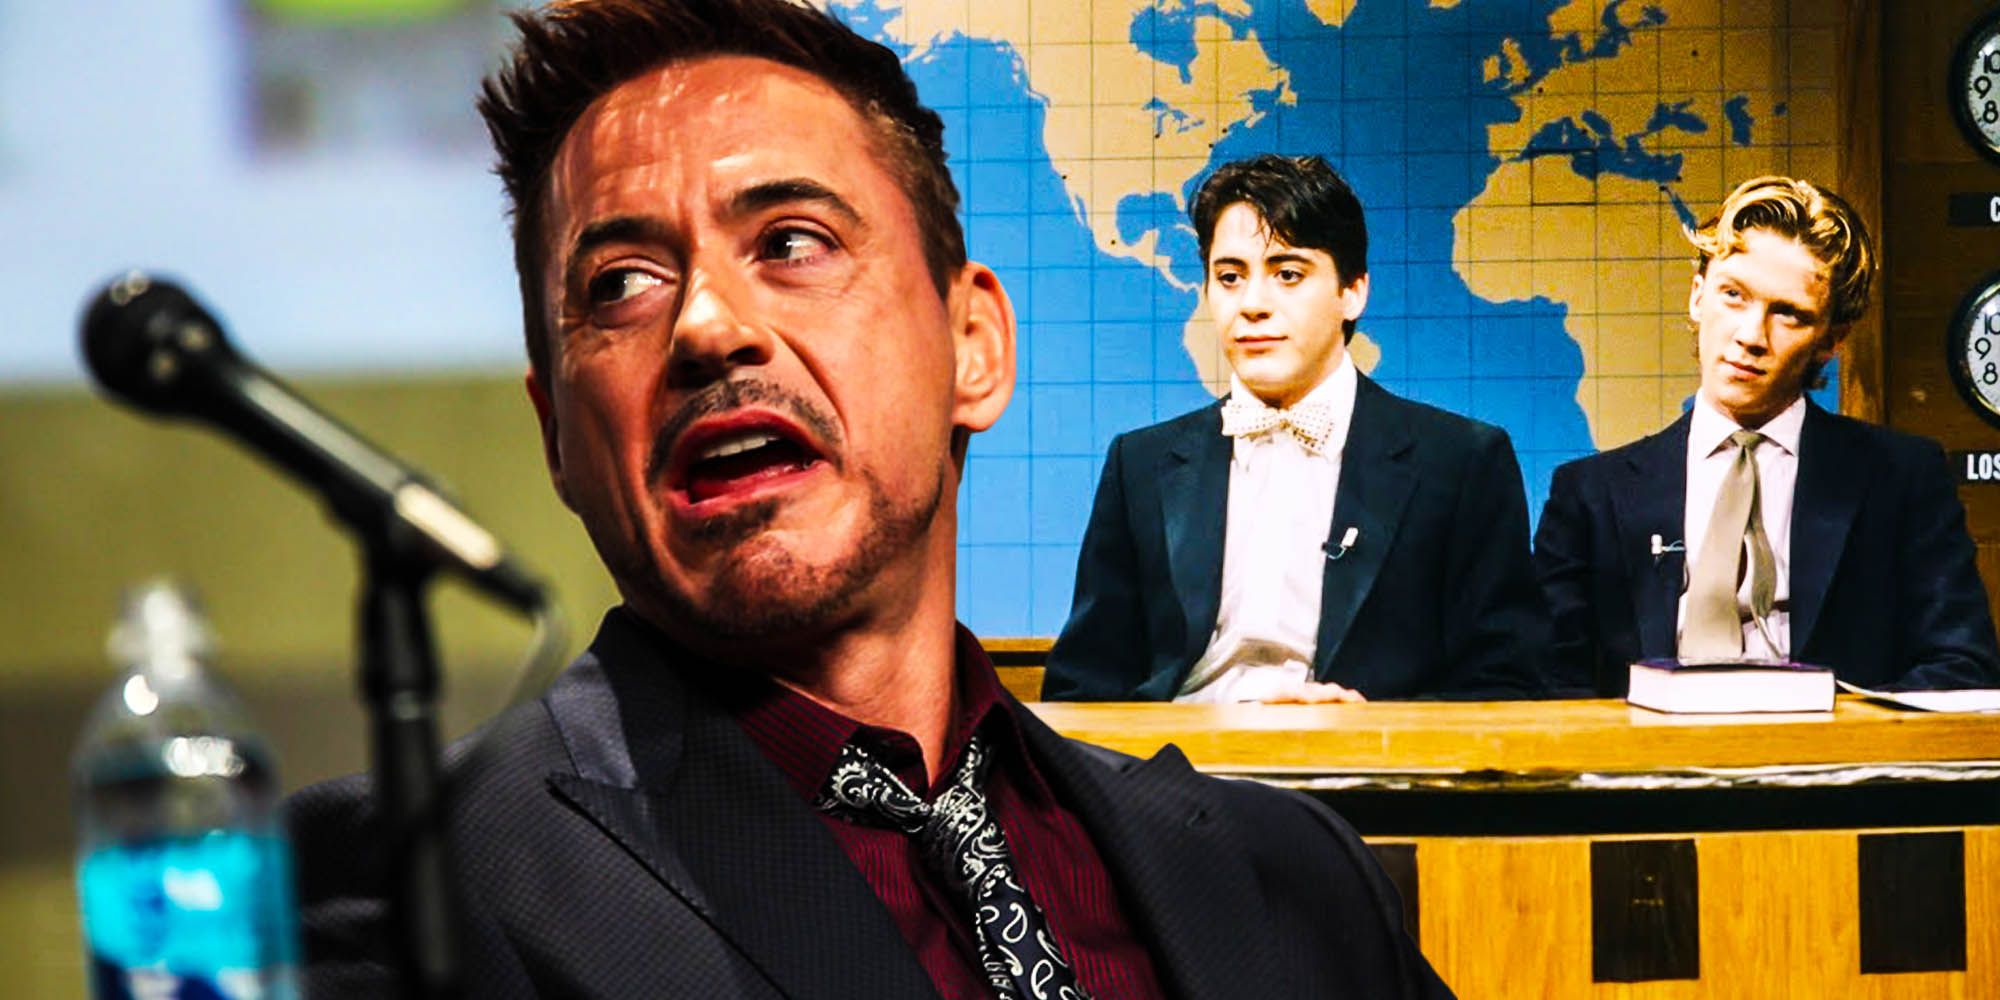 Robert Downey Jr lasted one season of SNL